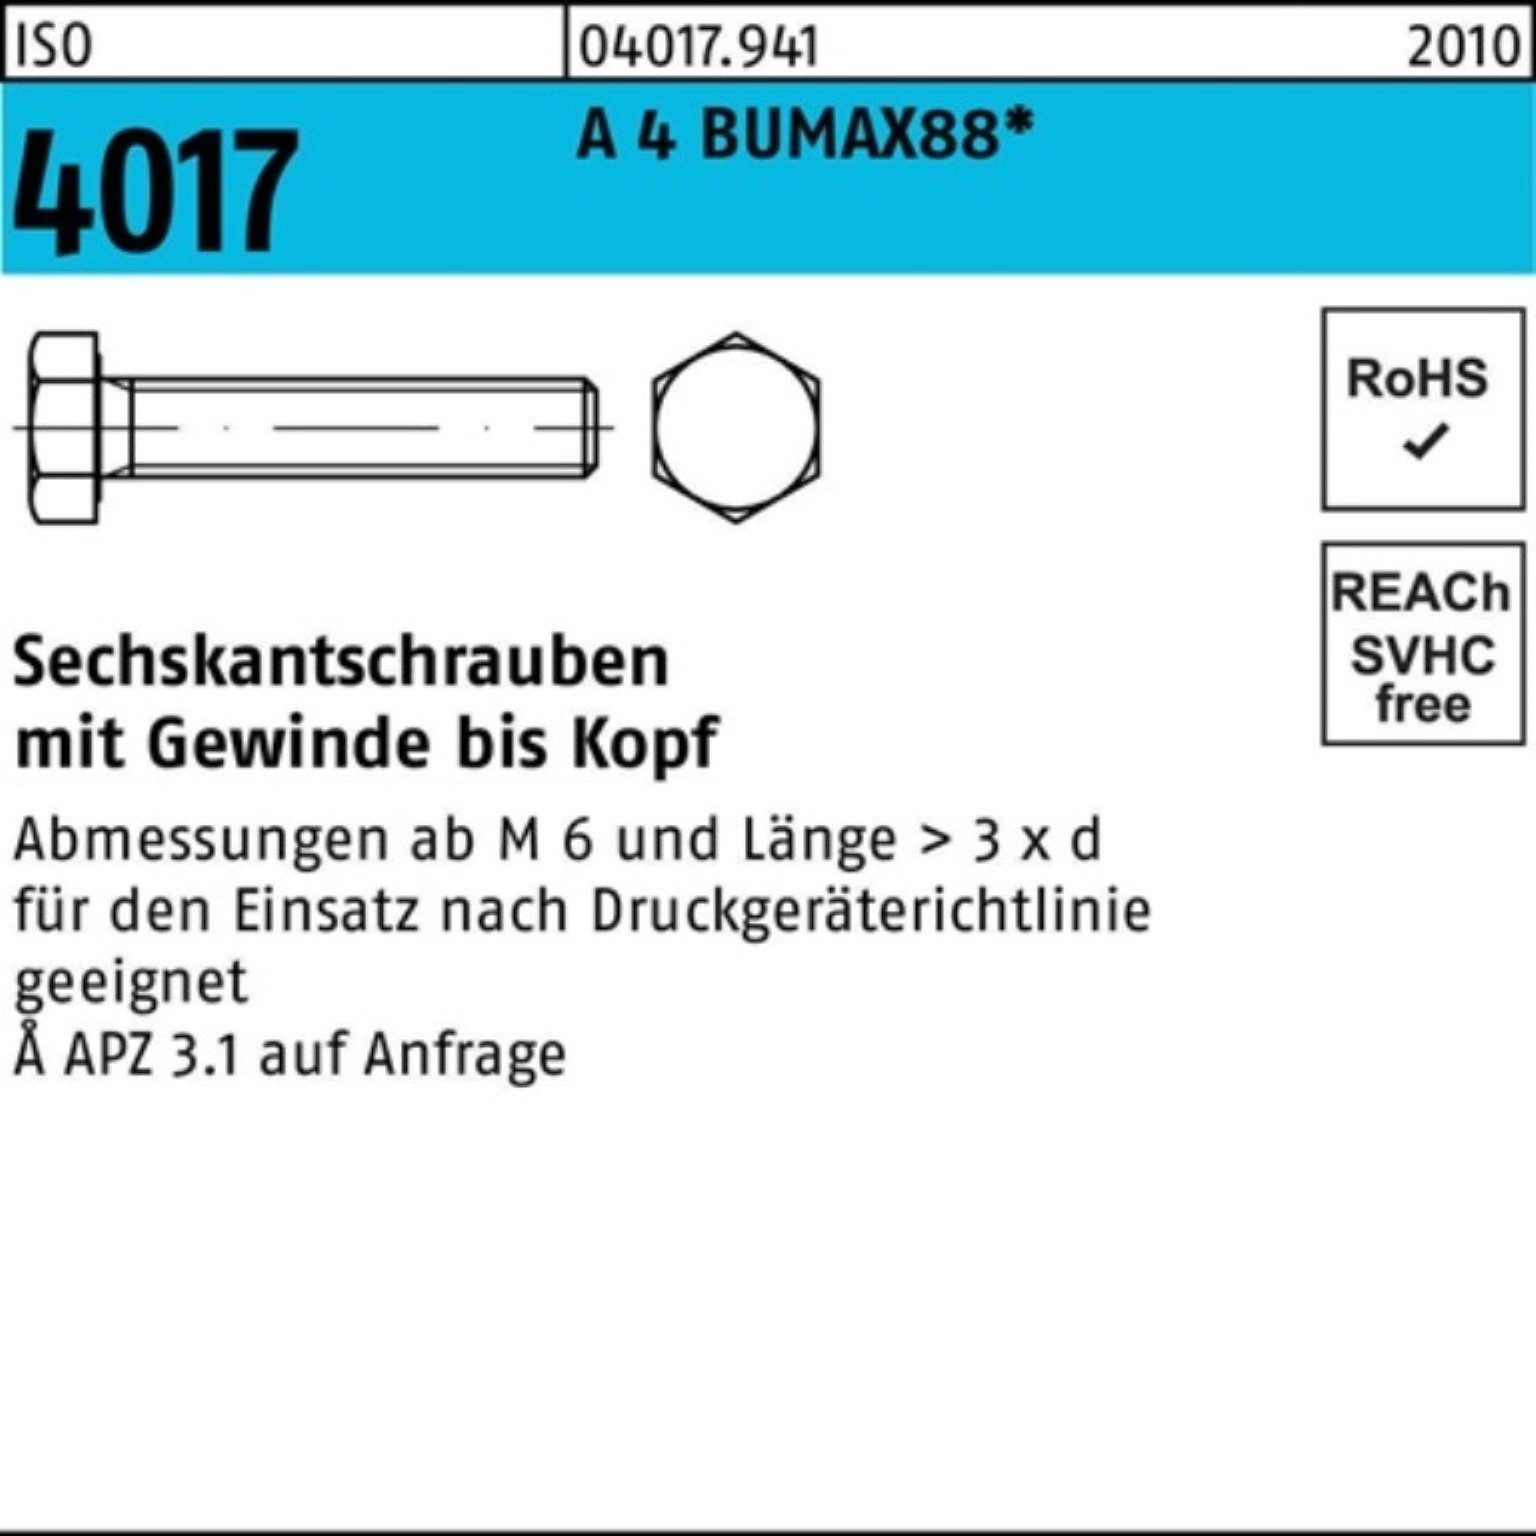 Bufab Sechskantschraube 100er Pack Sechskantschraube ISO 4017 VG M12x 50 A 4 BUMAX88 25 Stück